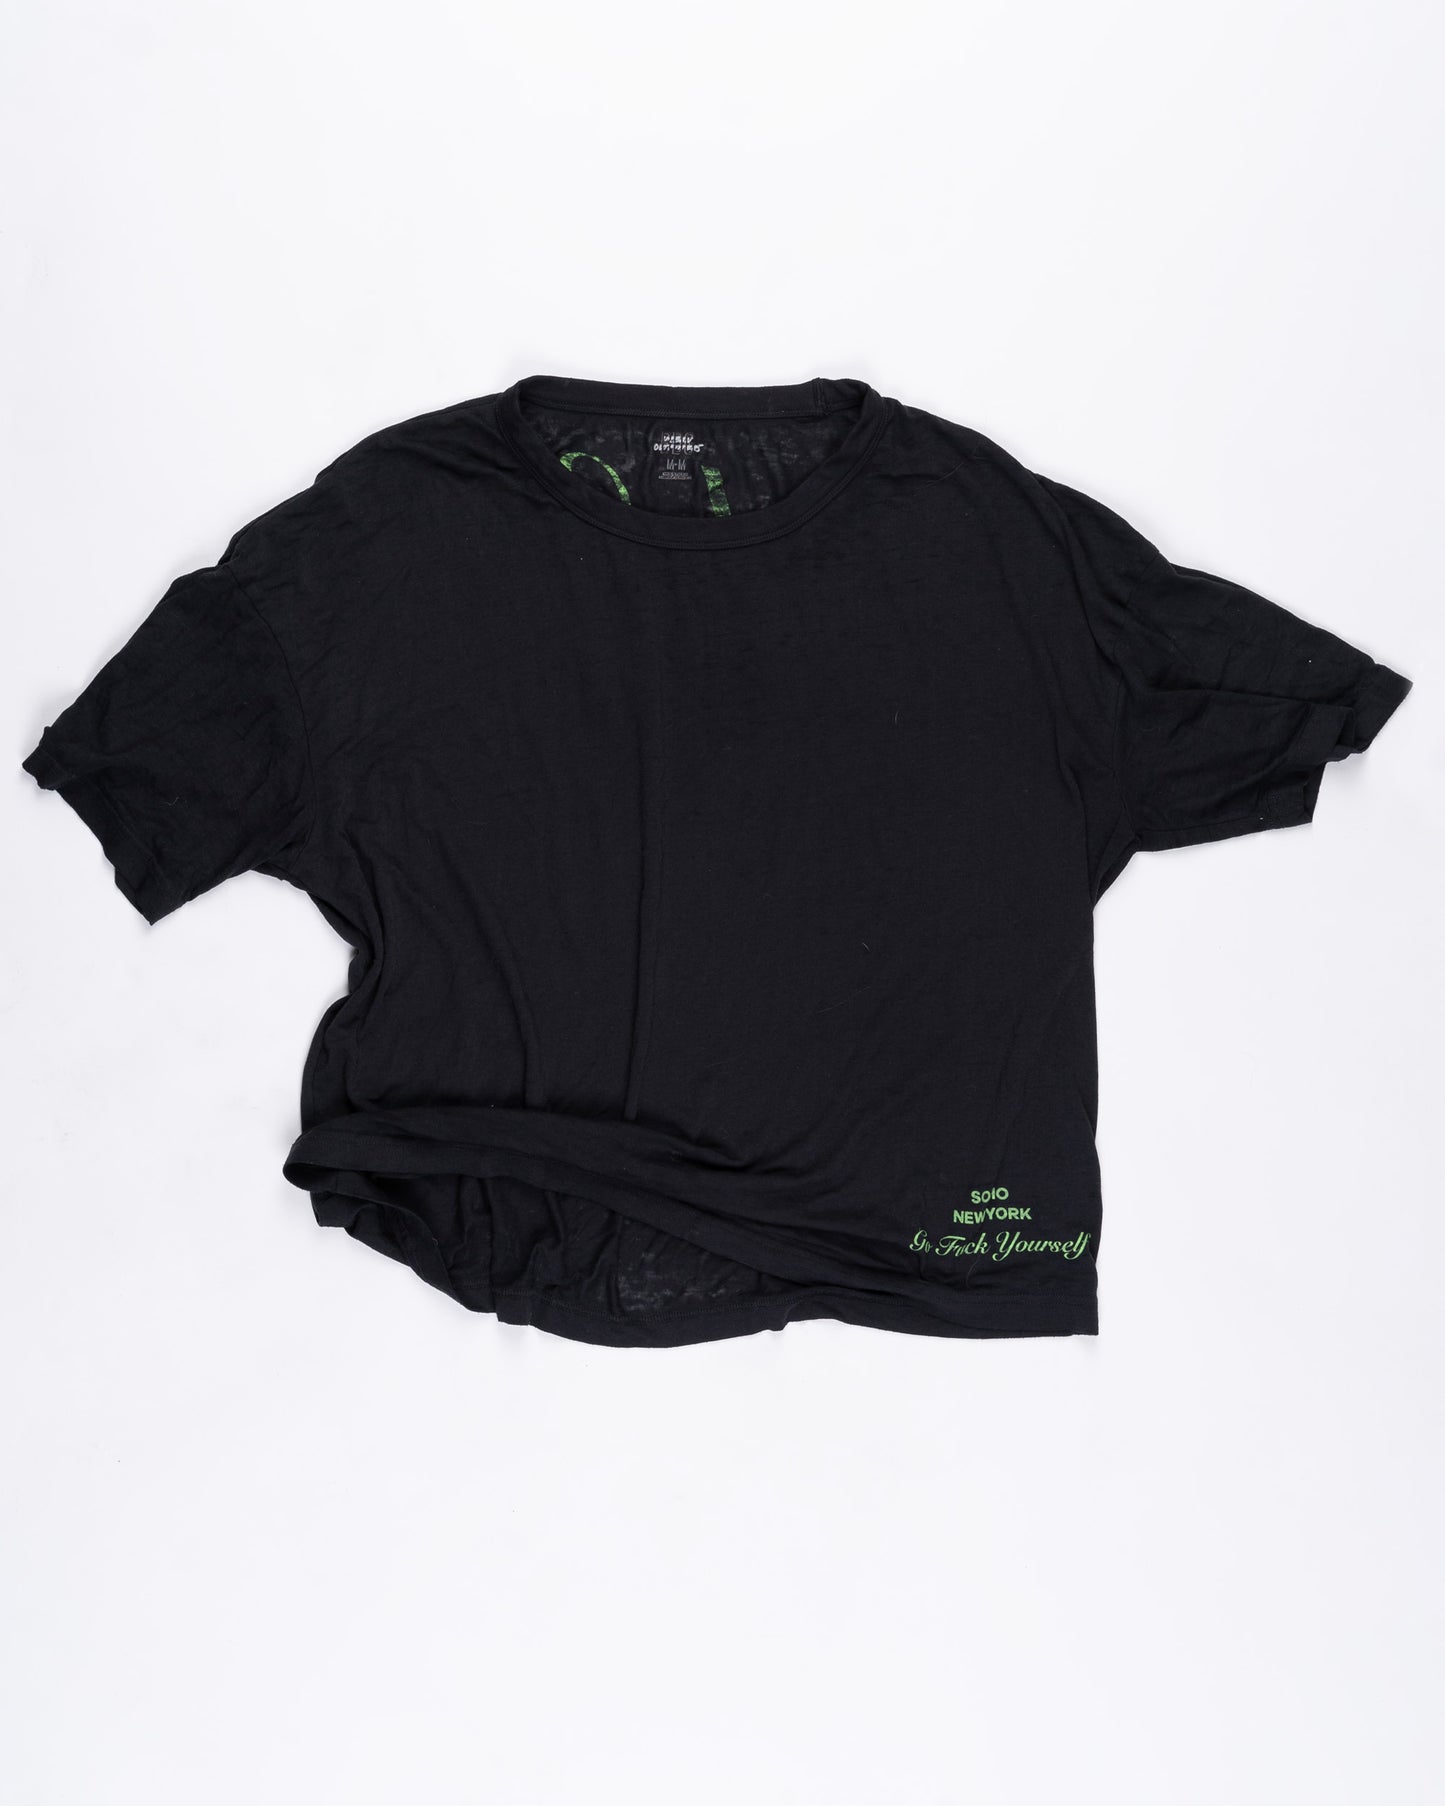 Black Lightweight T-shirt Size: Medium